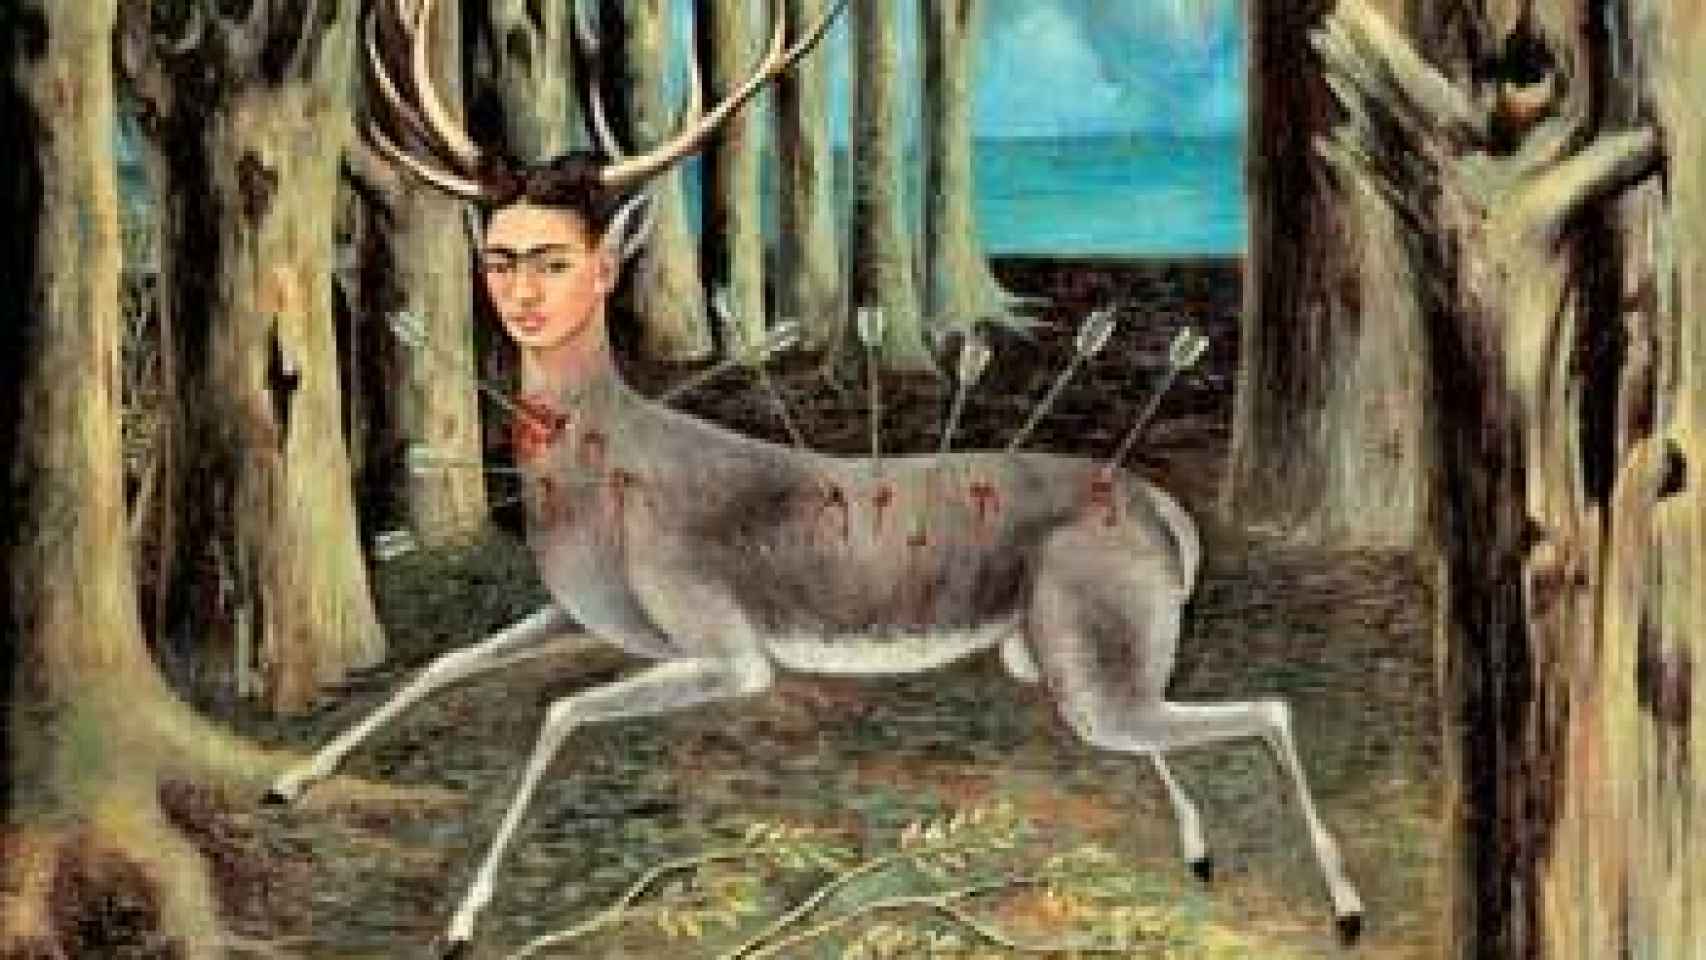 Image: Frida Kahlo, vida, obra y mito